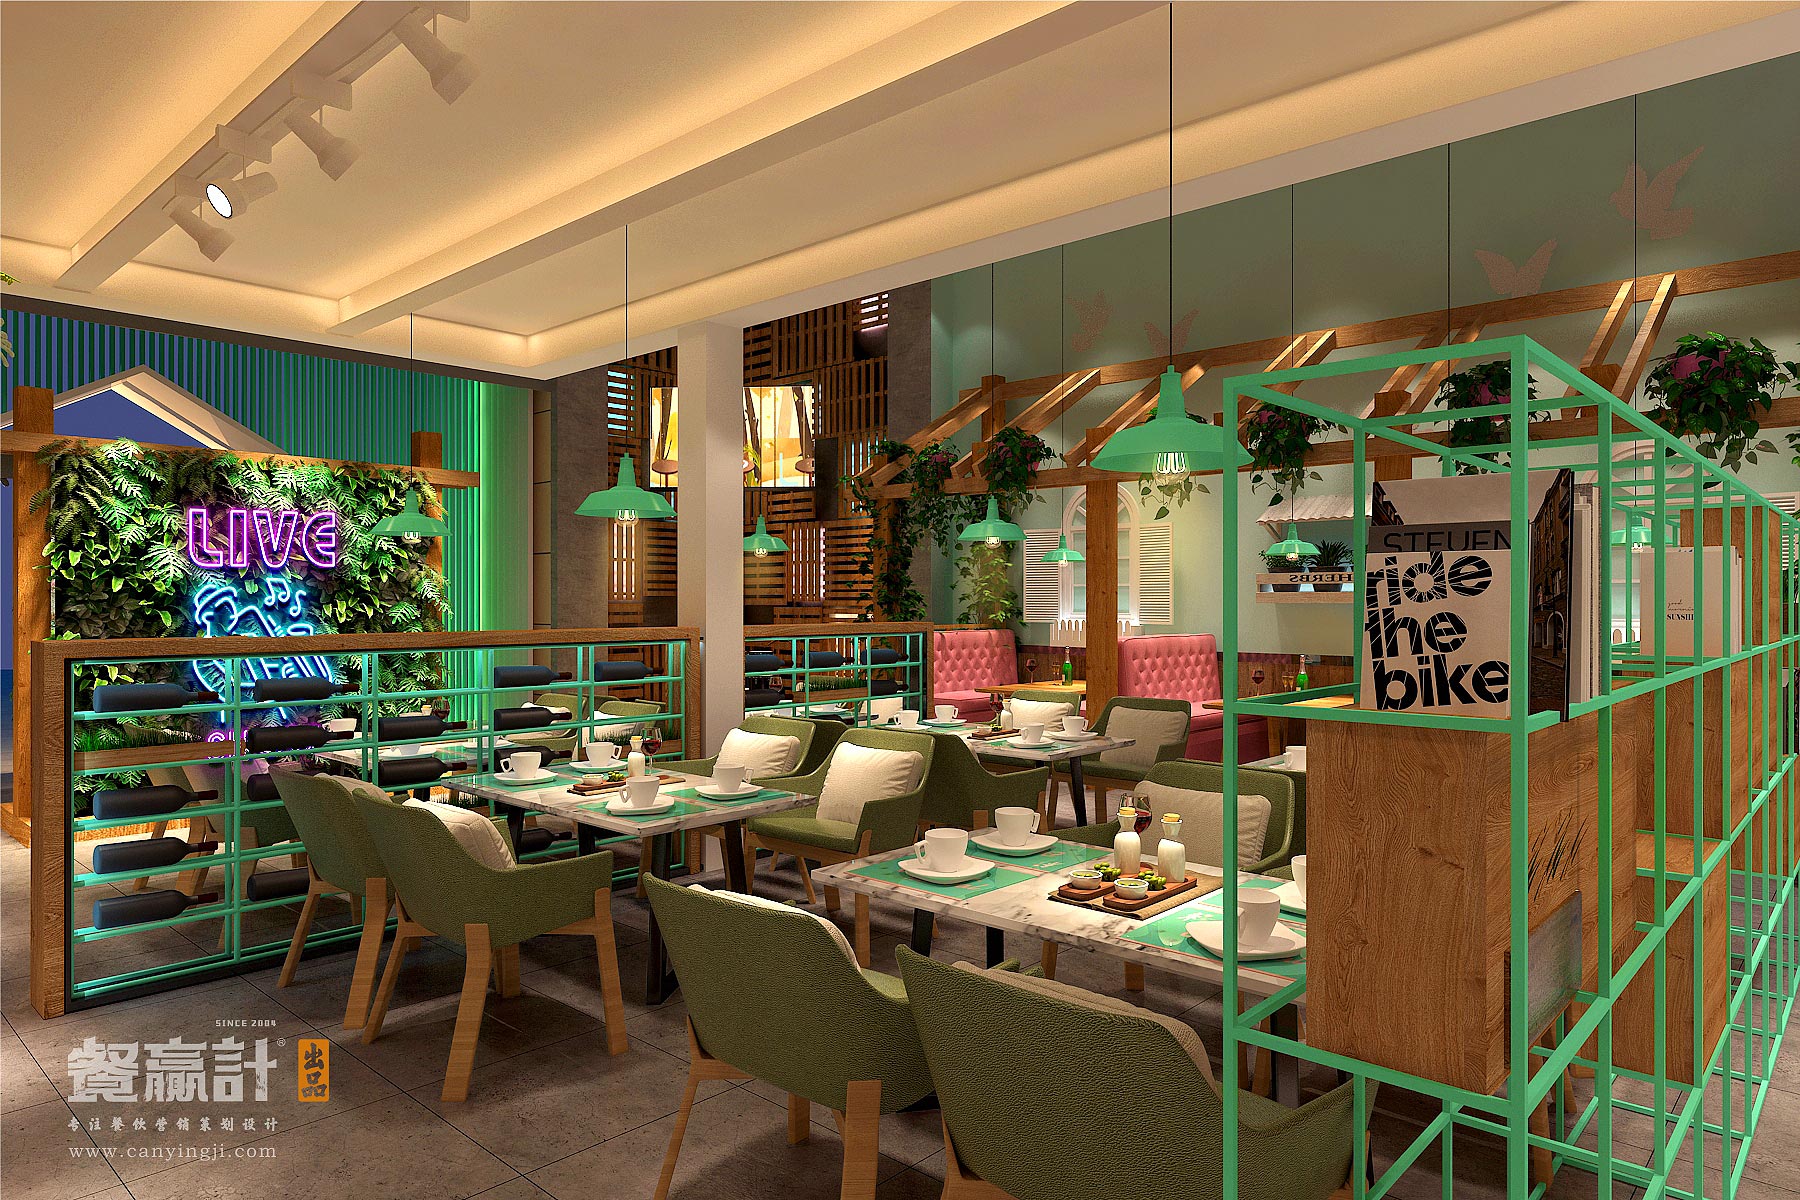 深圳生态主题餐厅空间升级改造设计——禾π创意空间设计